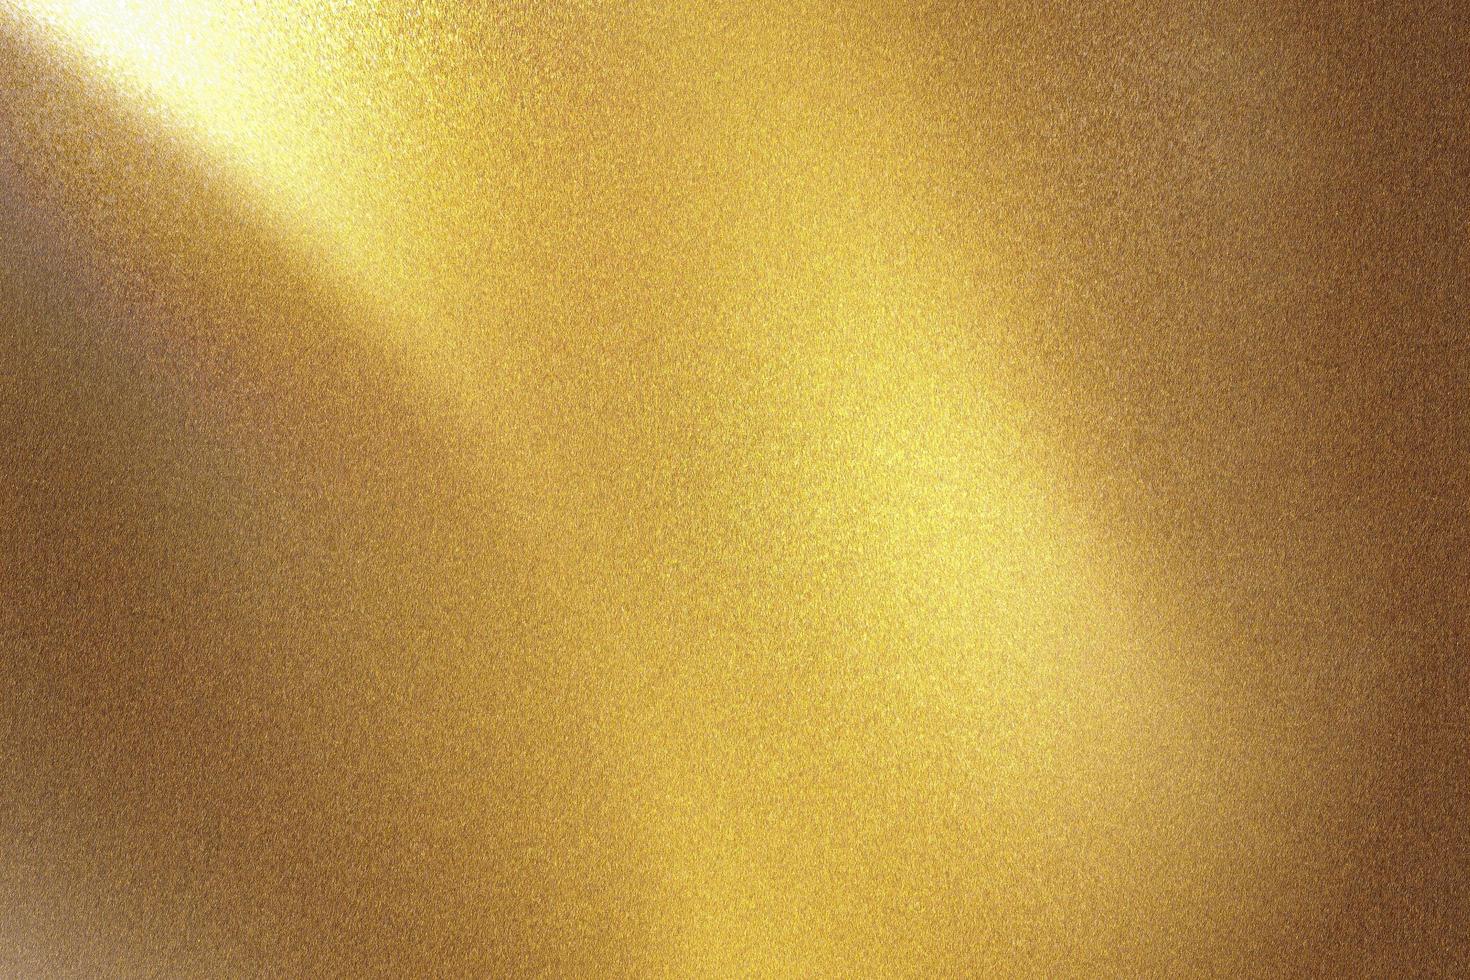 mur métallique doré brossé avec surface rayée, fond de texture abstraite photo